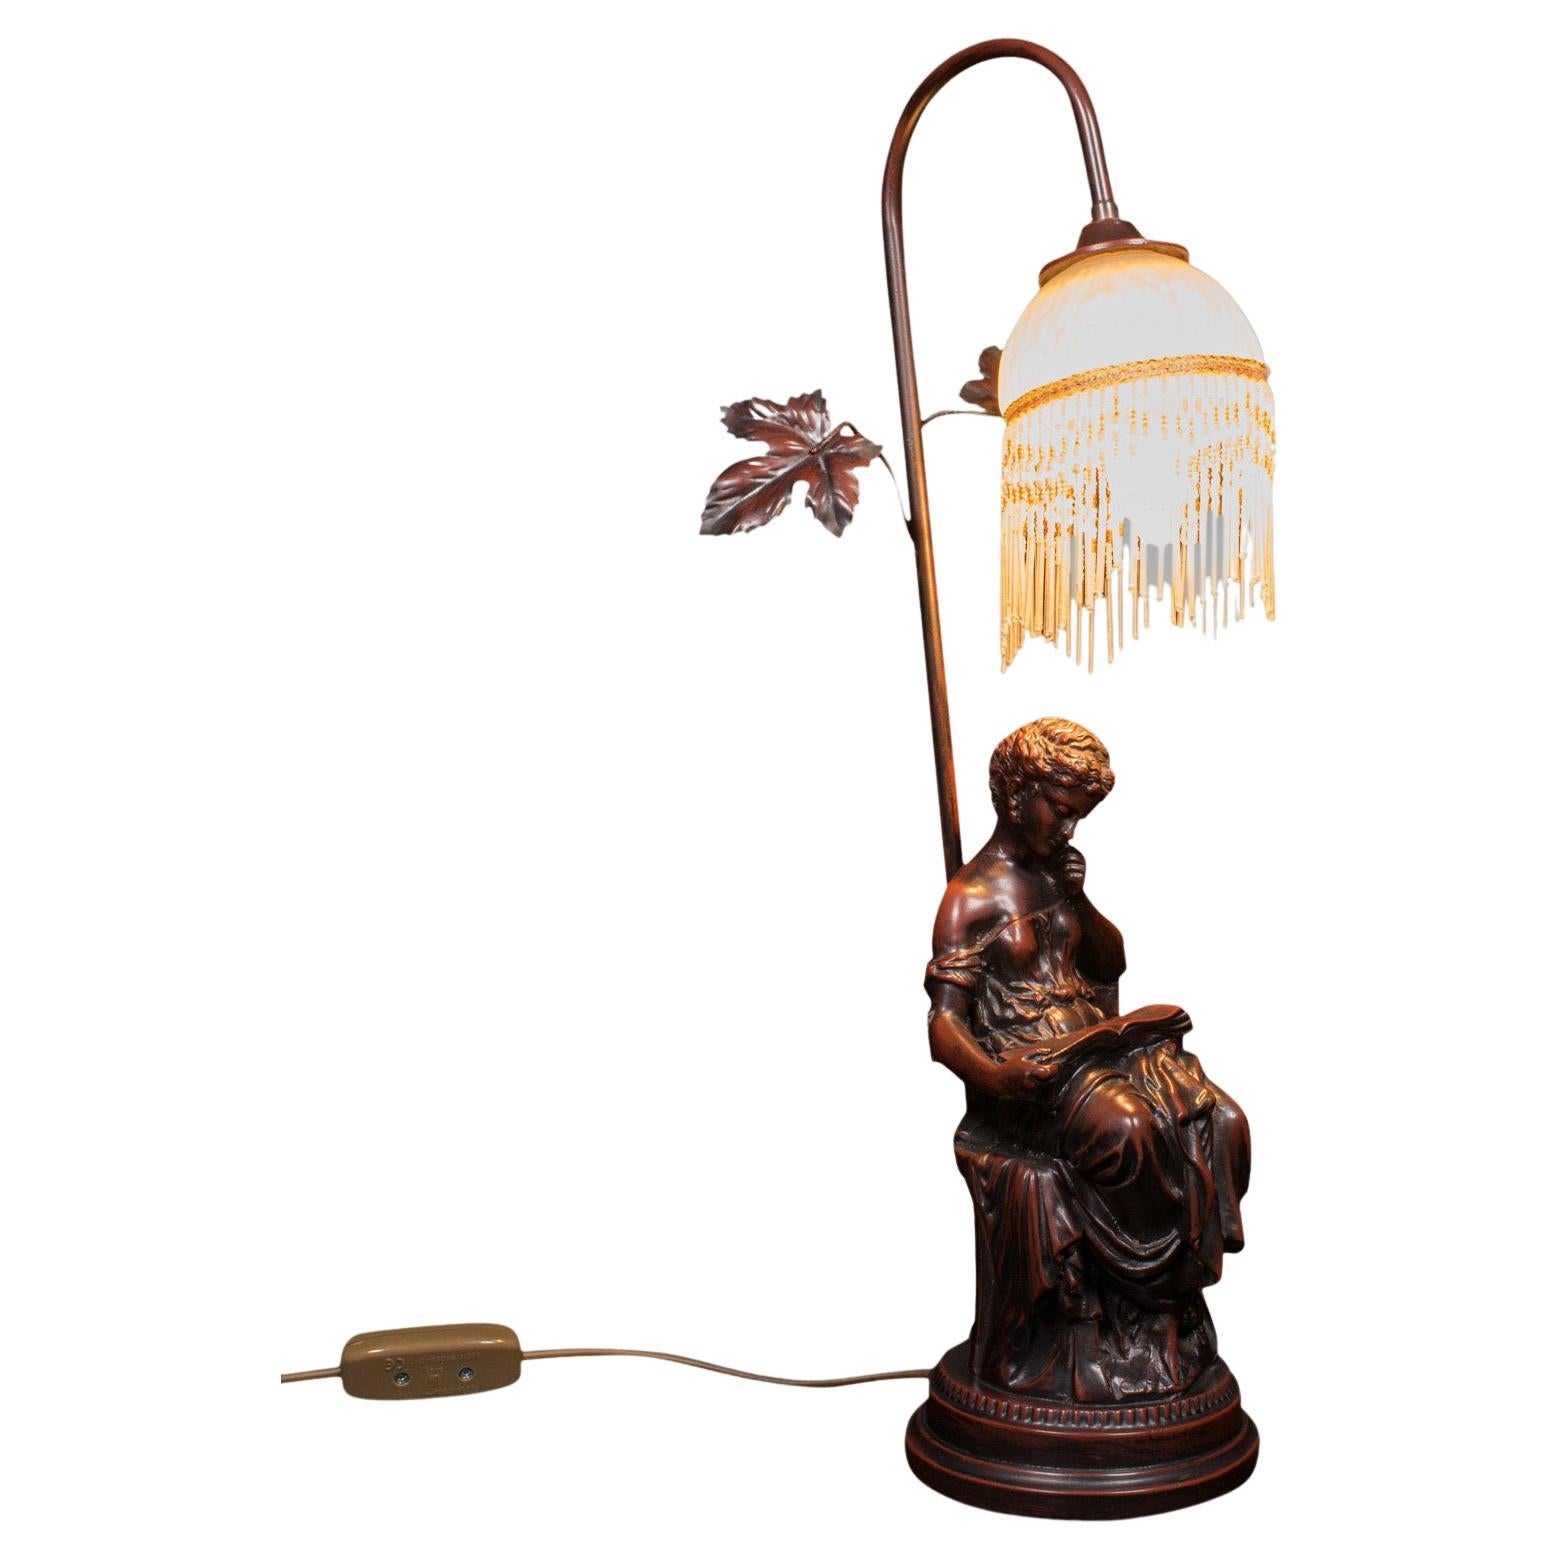 Vintage Decorative Lamp, French, Bronzed, Figural Light, Art Nouveau Revival For Sale